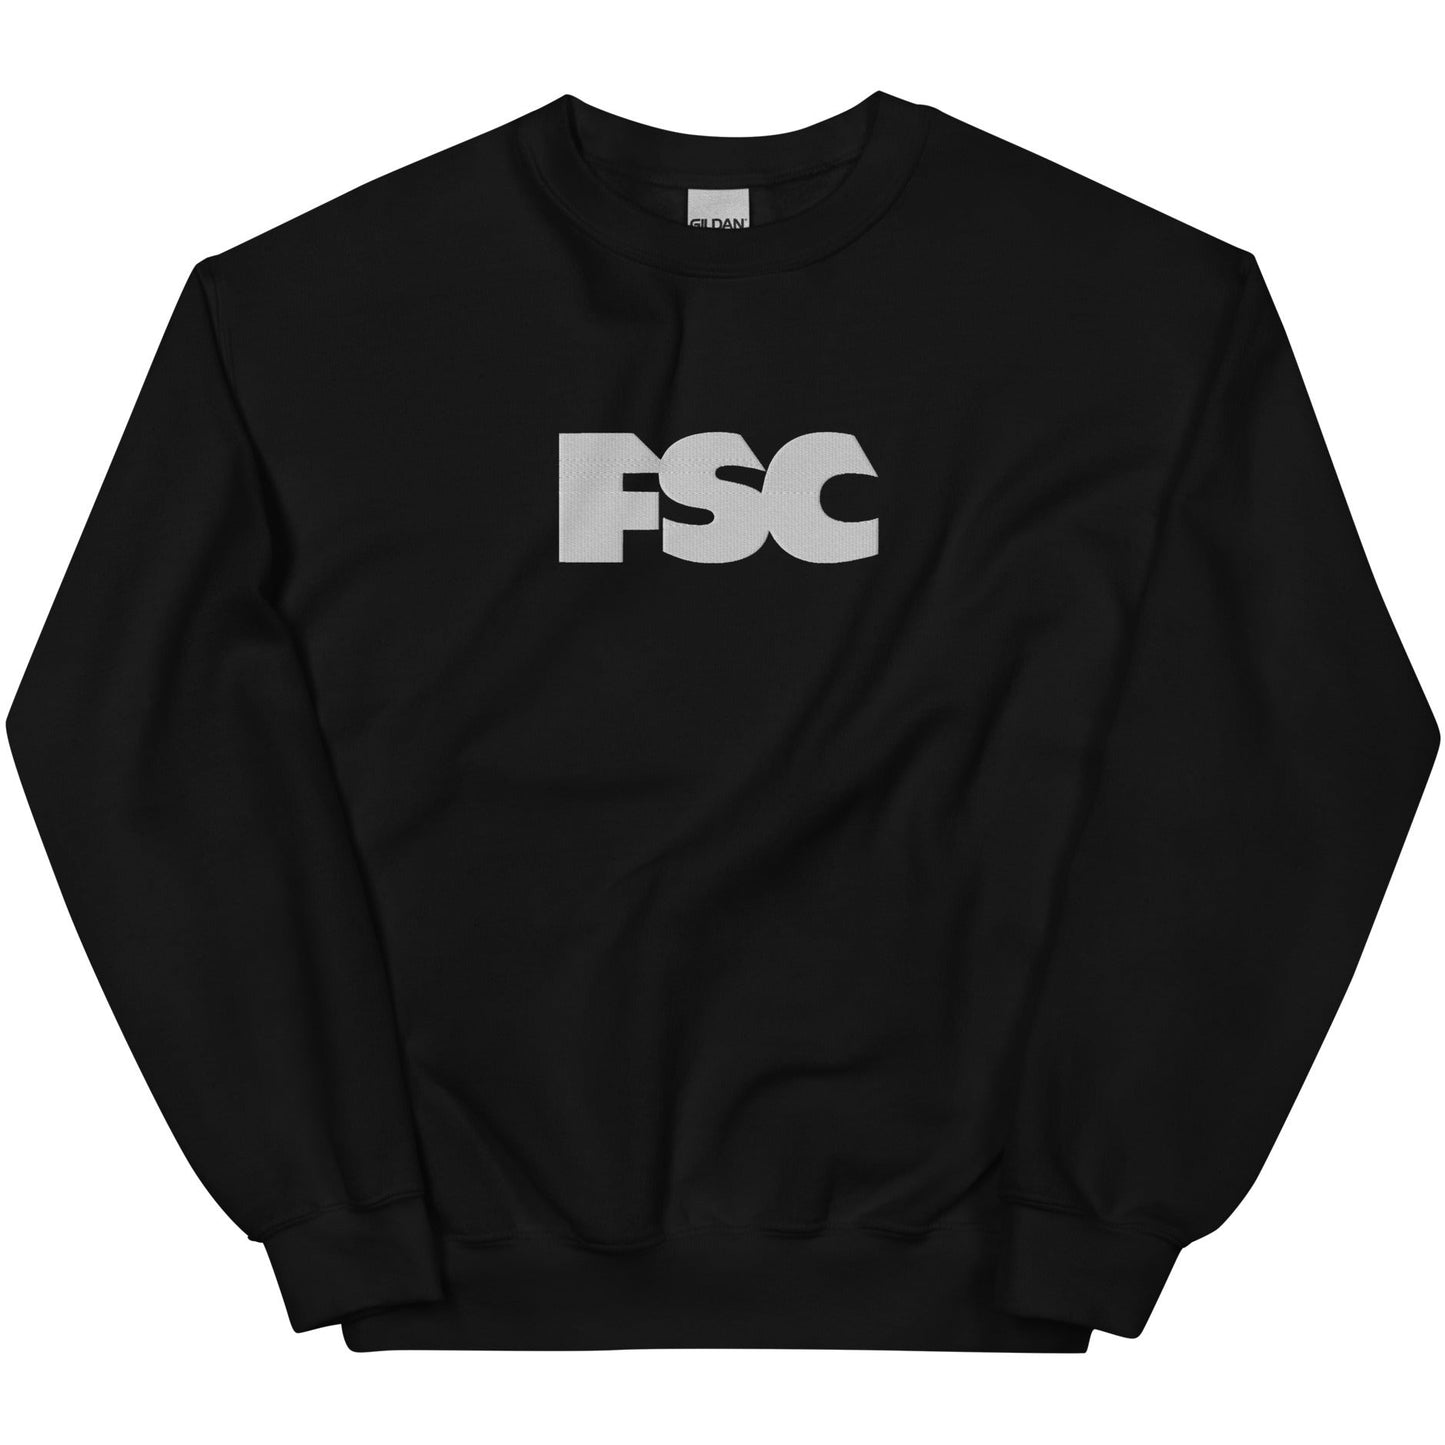 Funky Sweatshirt Collection